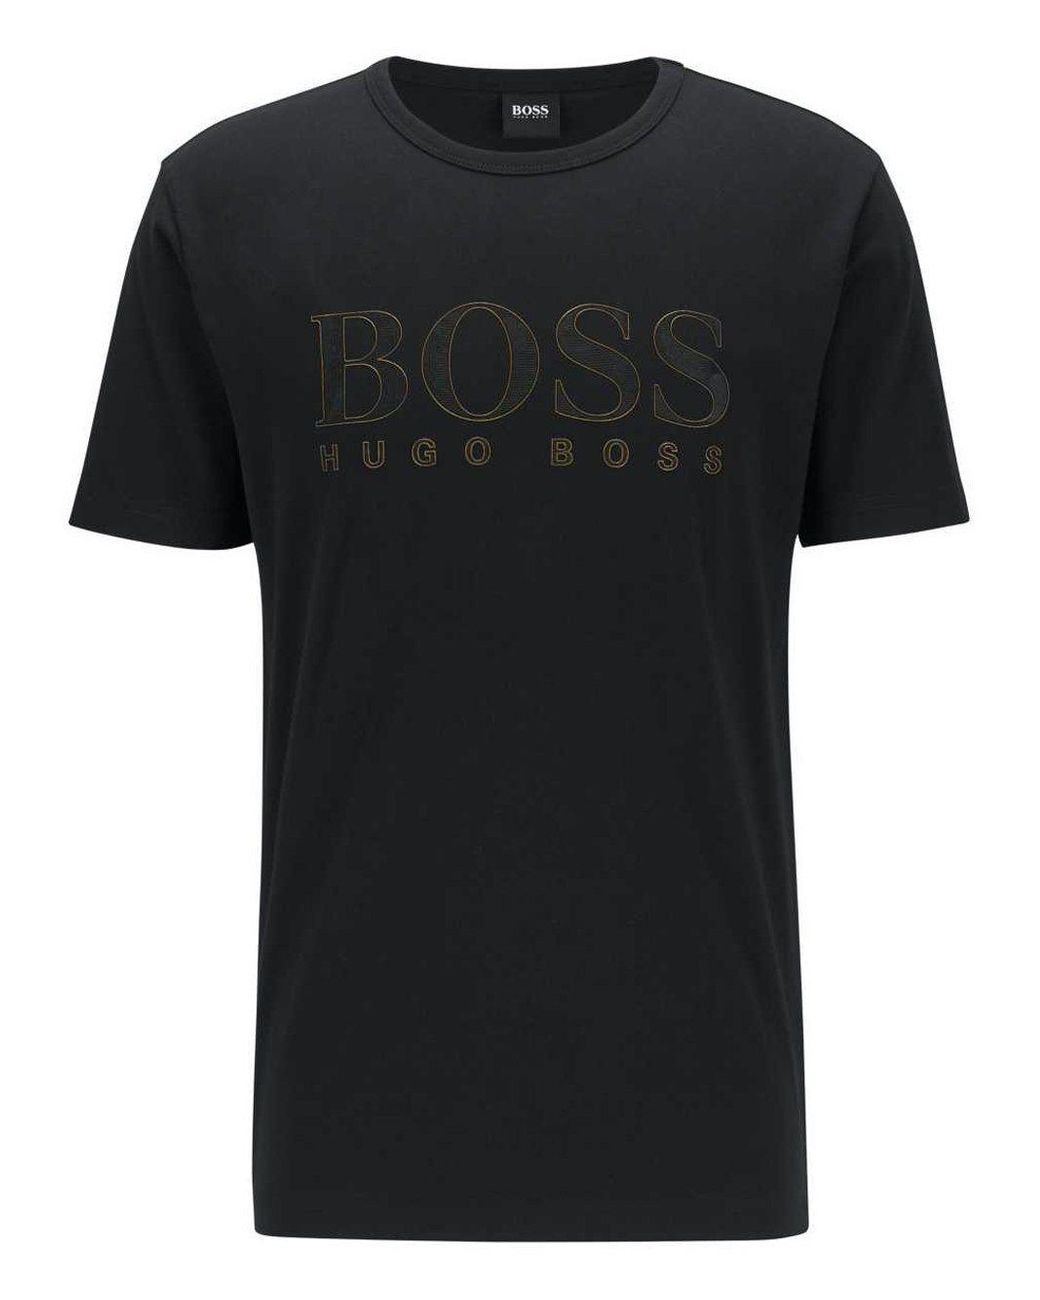 BOSS by Hugo Boss Boss Gold Effect Logo T-shirt Black for Men - Lyst